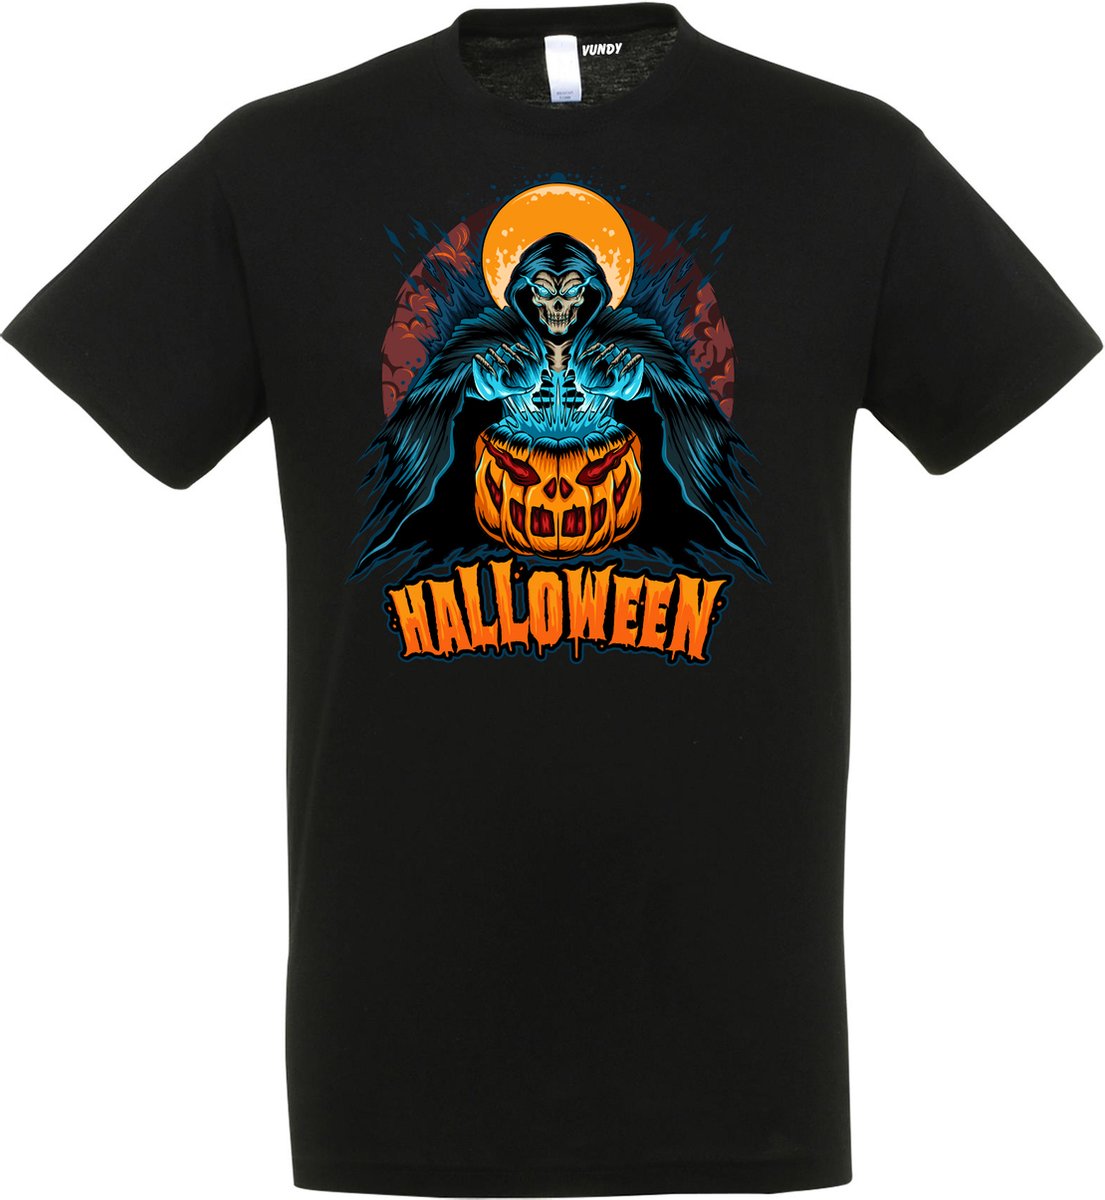 T-shirt Halloween Magic Pompoen | Halloween kostuum kind dames heren | verkleedkleren meisje jongen | Zwart | maat 5XL